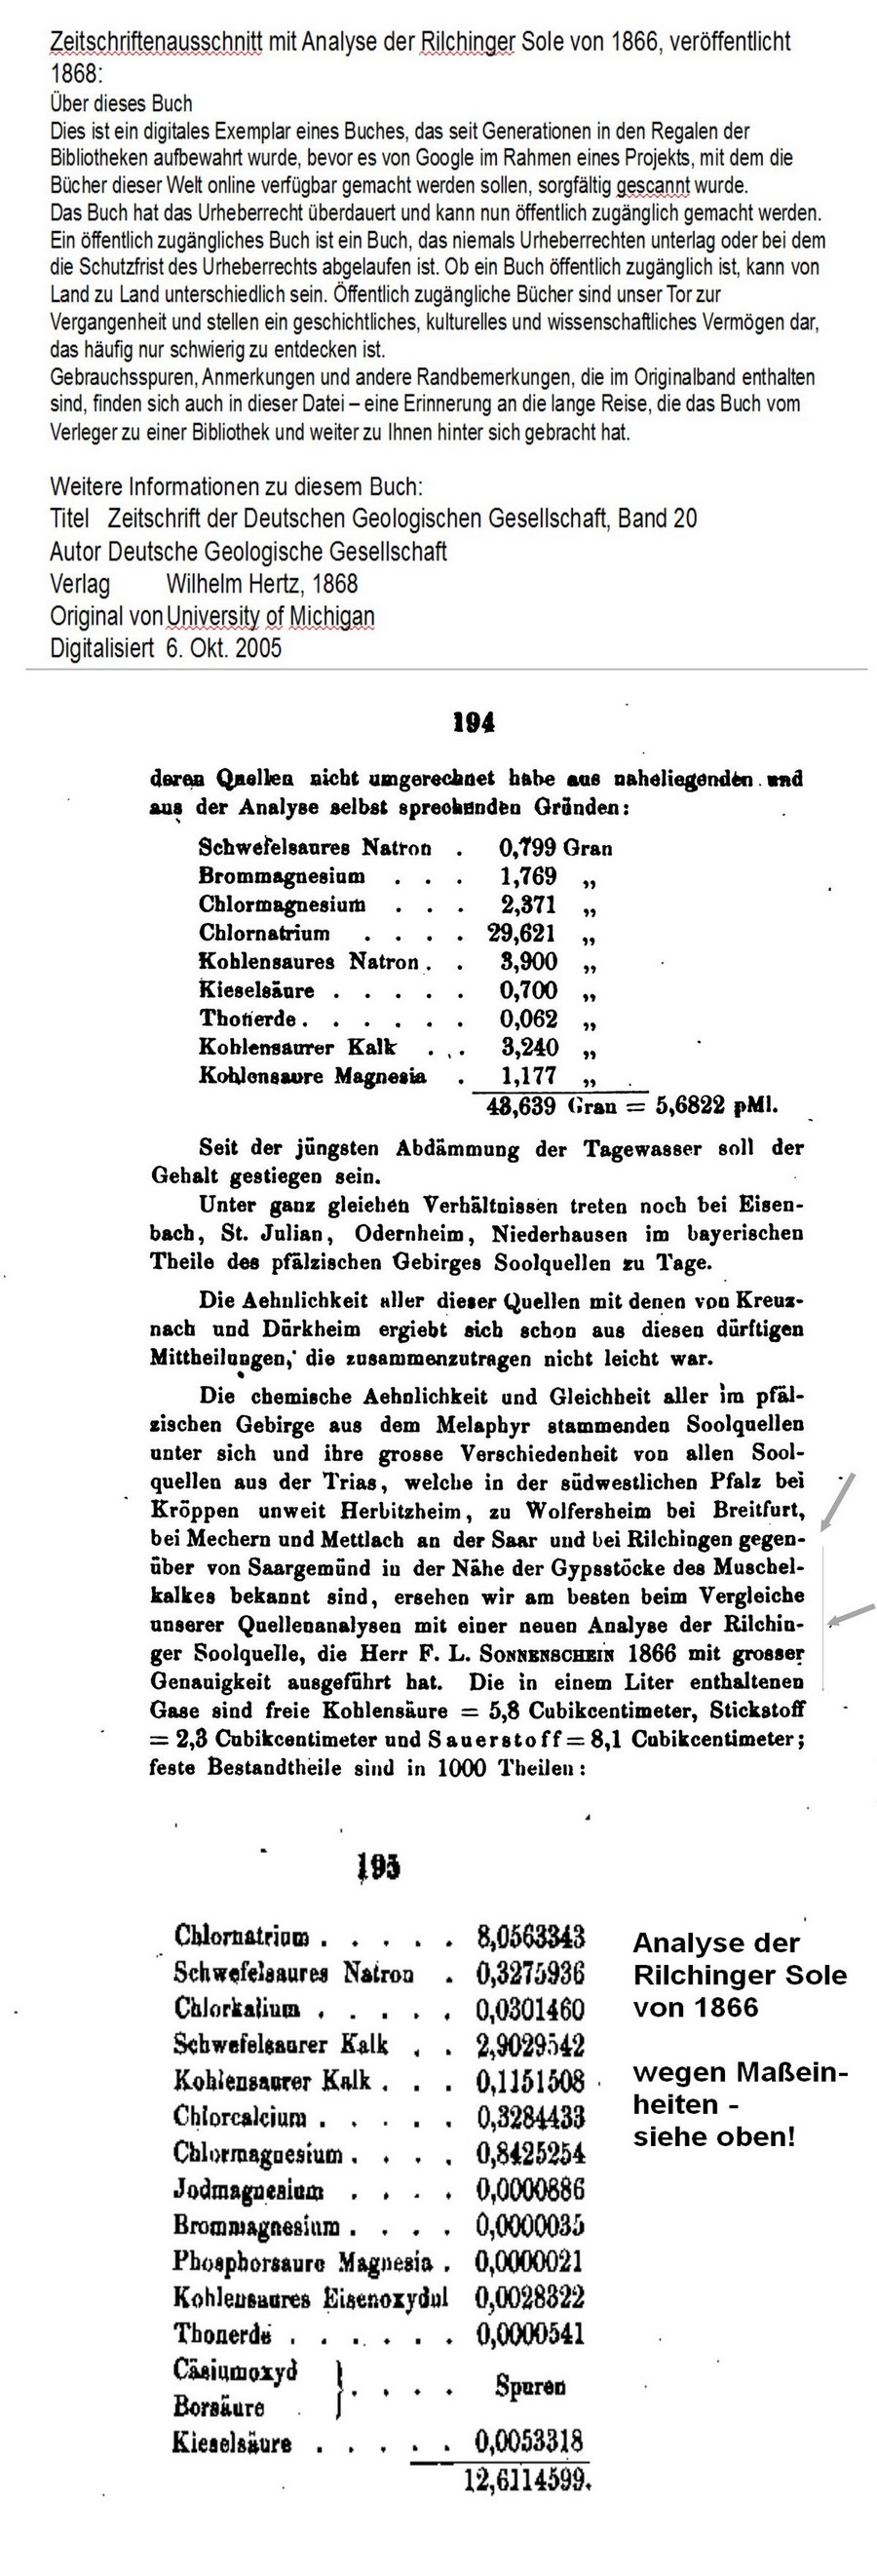 Analyse der Rilchinger Sole von 1866, Fundstelle Uni von Michigan/USA